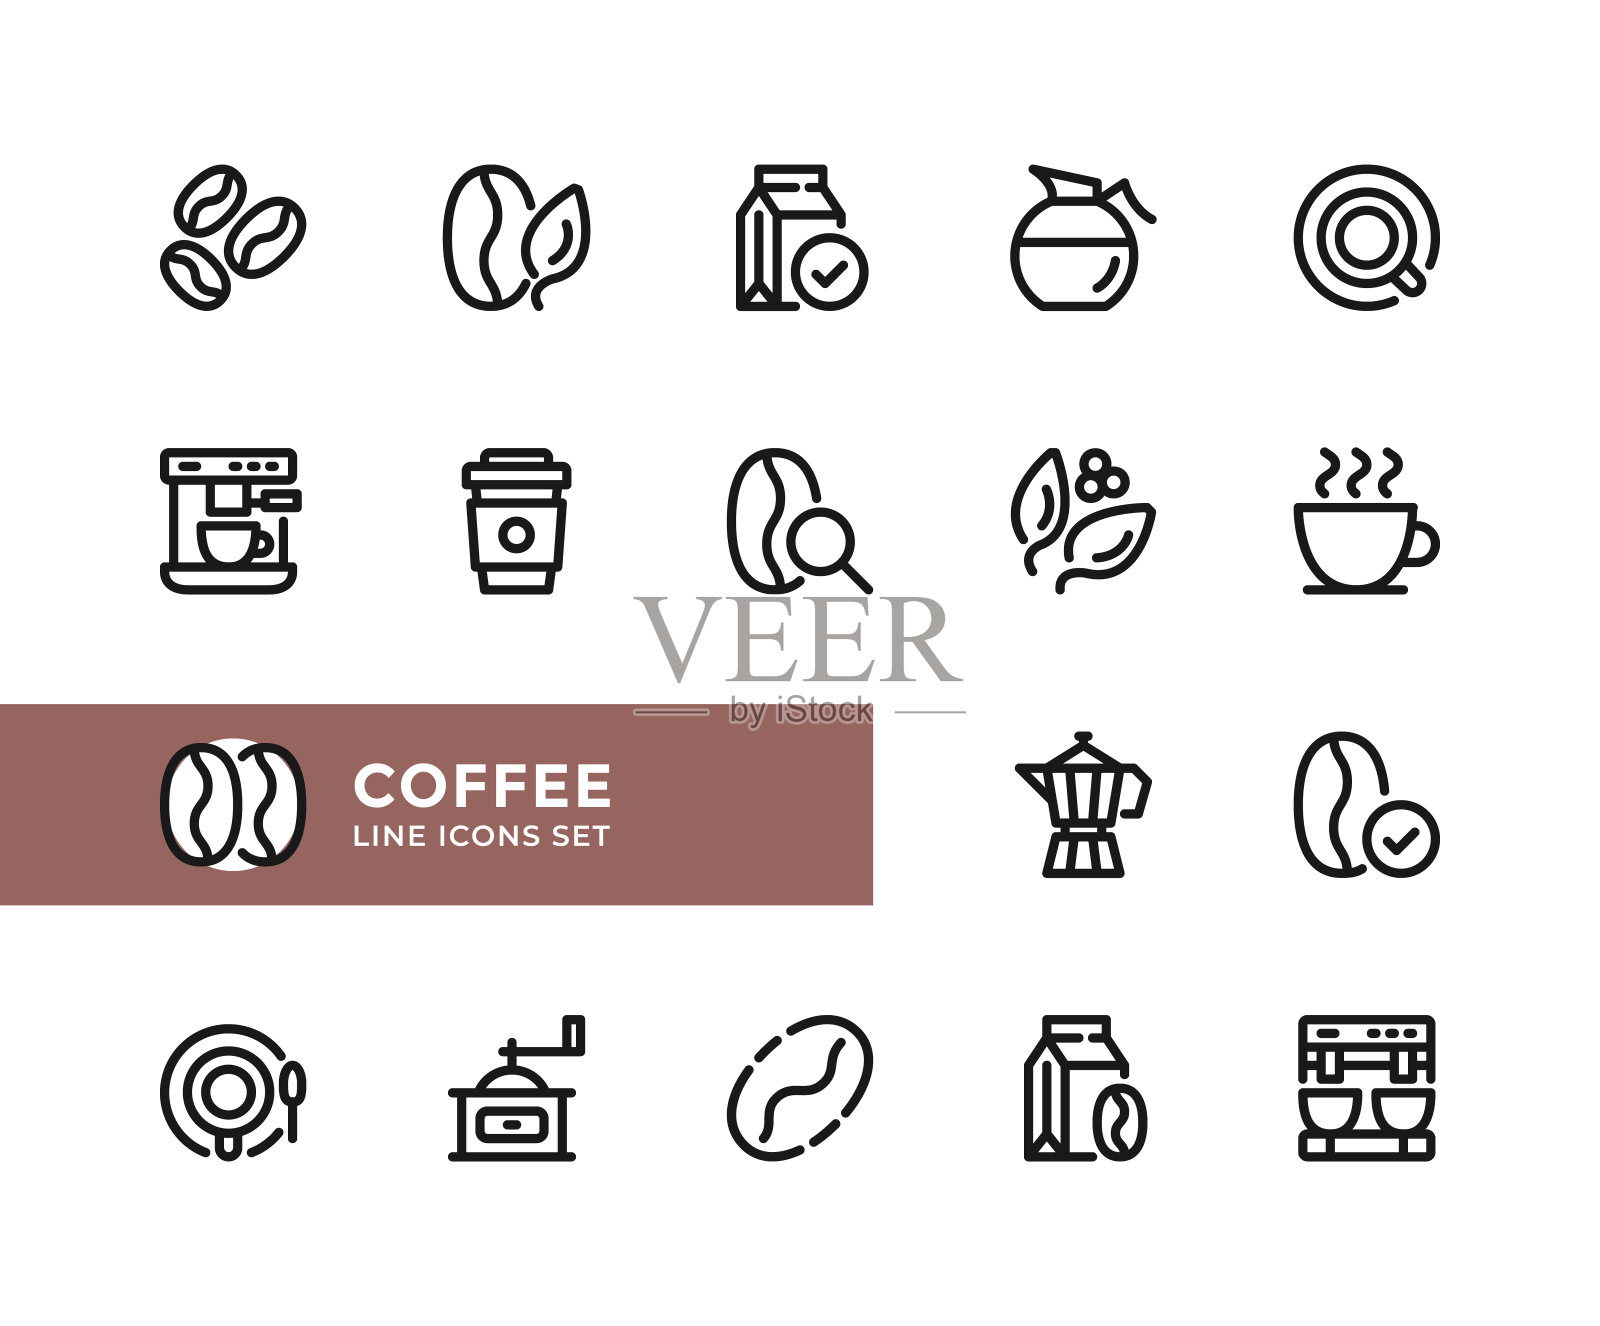 咖啡向量线图标。简单的一套轮廓符号，现代线性平面设计元素。咖啡图标集。像素完美图标素材